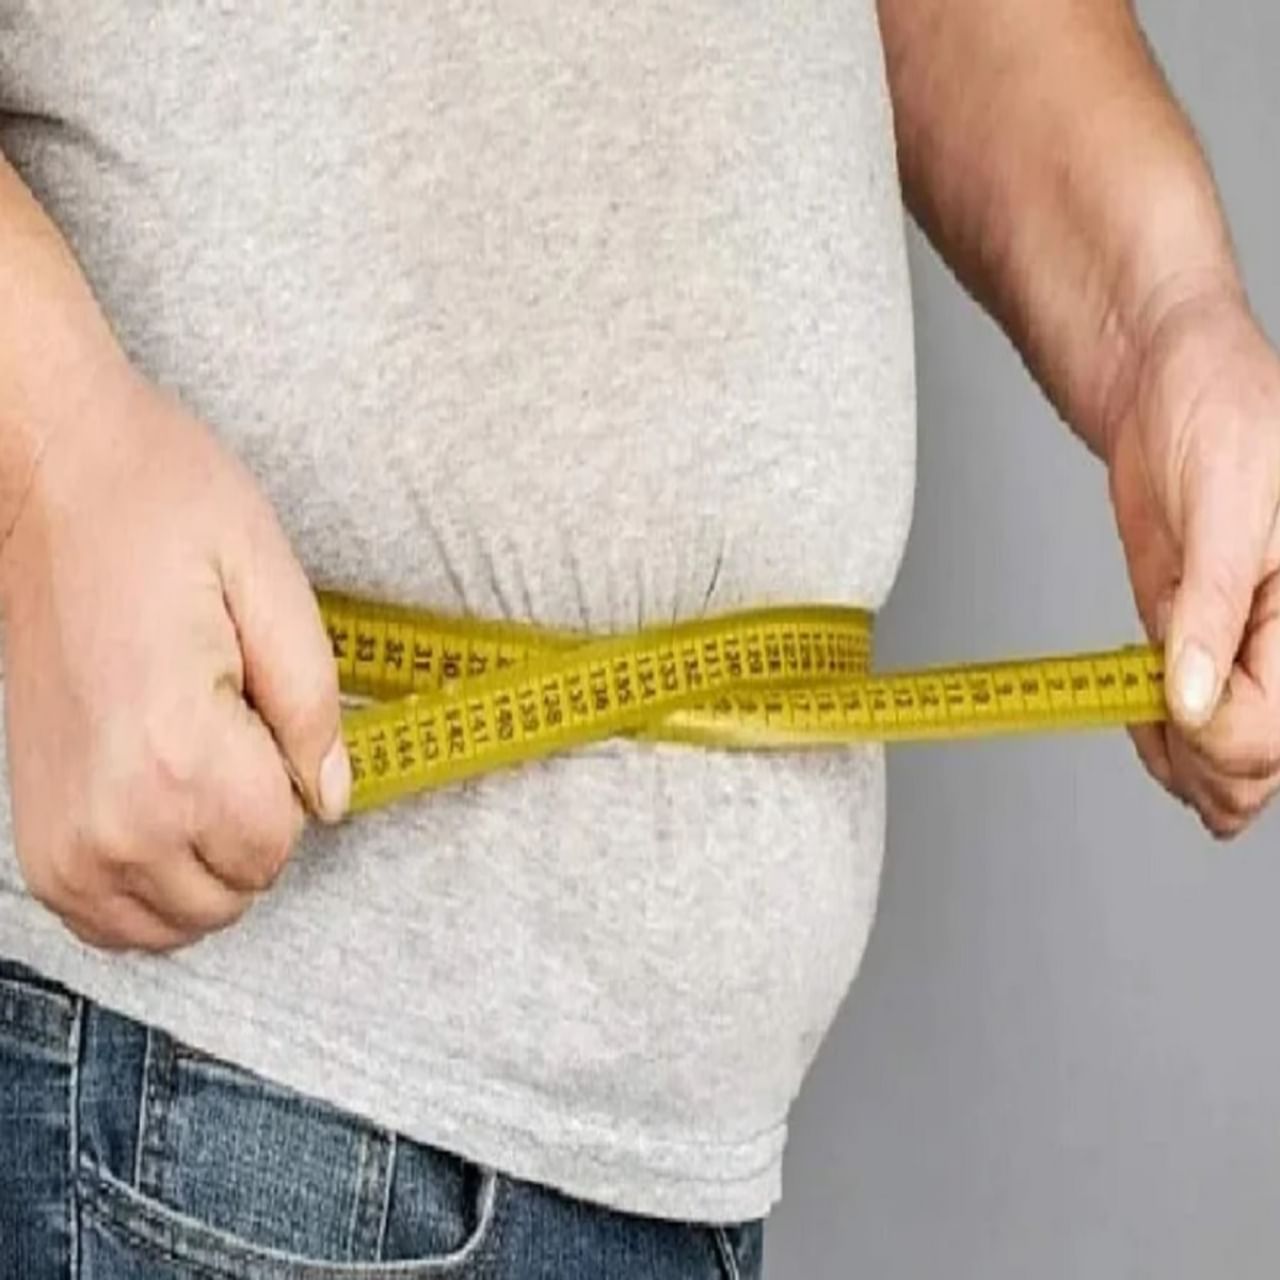 लठ्ठपणा ही अशी स्थिती आहे. ज्यामध्ये एखाद्या व्यक्तीच्या शरीरात हानिकारक चरबीचे प्रमाण वाढते. यामुळे गंभीर धोका देखील निर्माण होतो. शरीरातील अतिरिक्त चरबी हाडे आणि महत्वाच्या अवयवांवर दबाव टाकते. यामुळे आरोग्याच्या अनेक समस्या निर्माण होतात. 